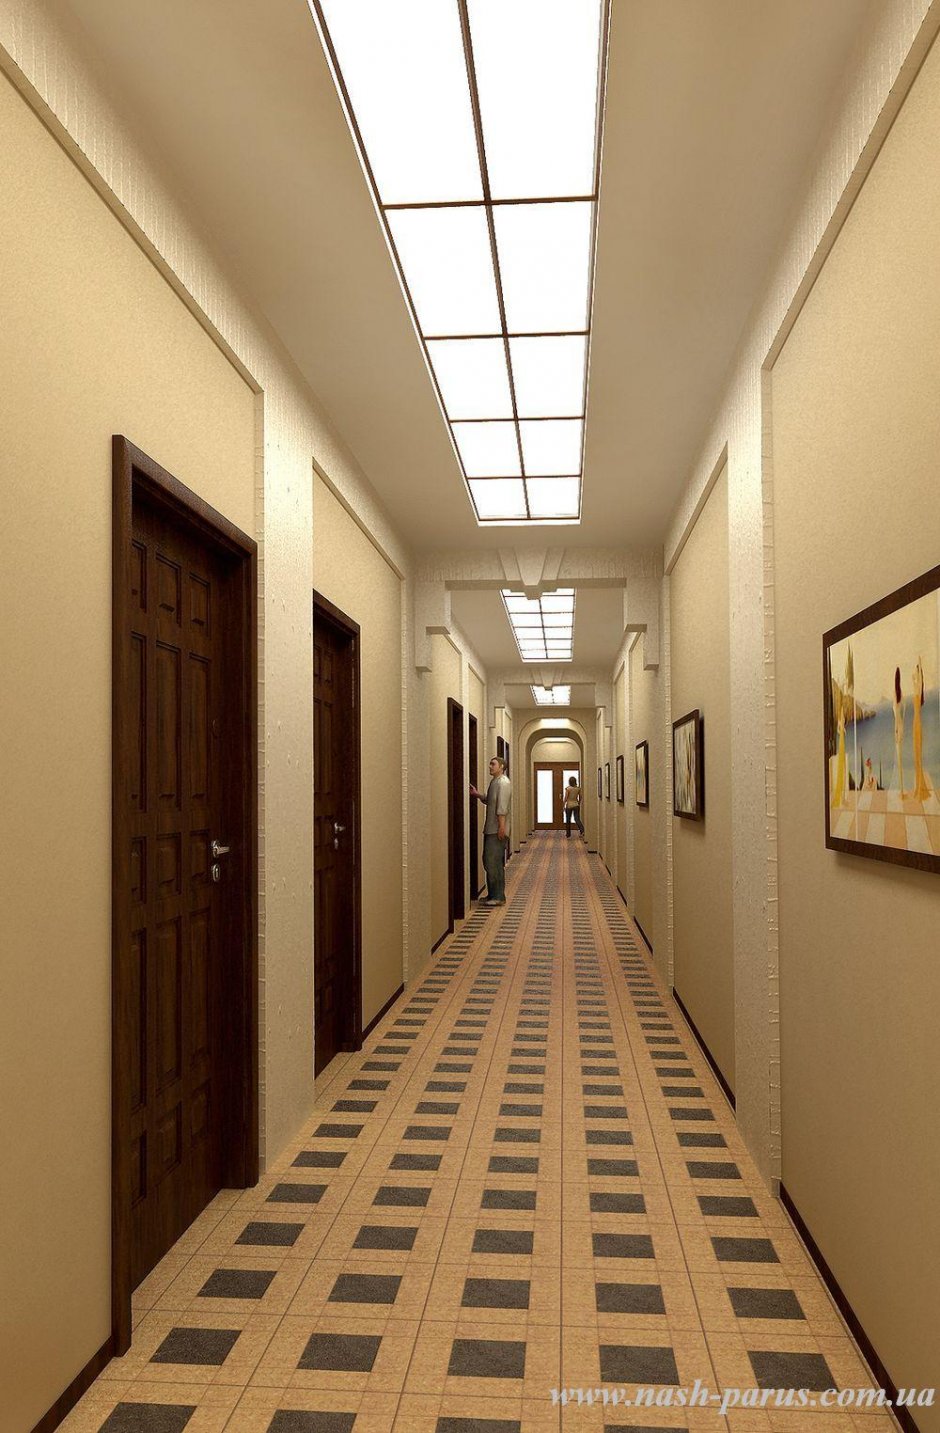 Общий коридор в многоквартирном доме